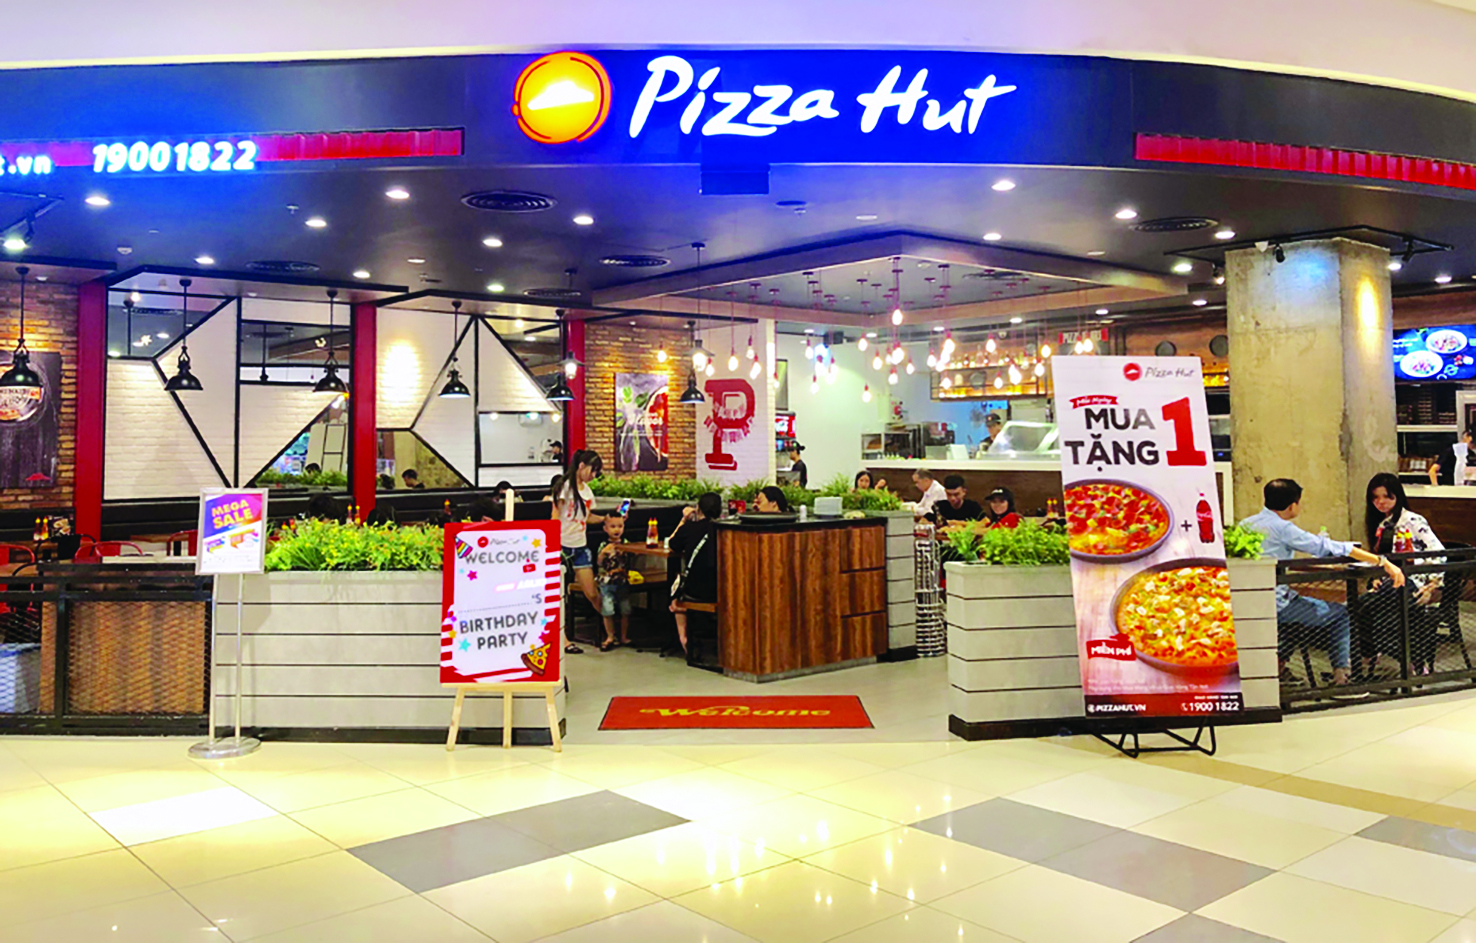  Pizza Hut -một trong những thương hiệu quốc tế nhượng quyền tại Việt Nam. Ảnh: Hoài Nam